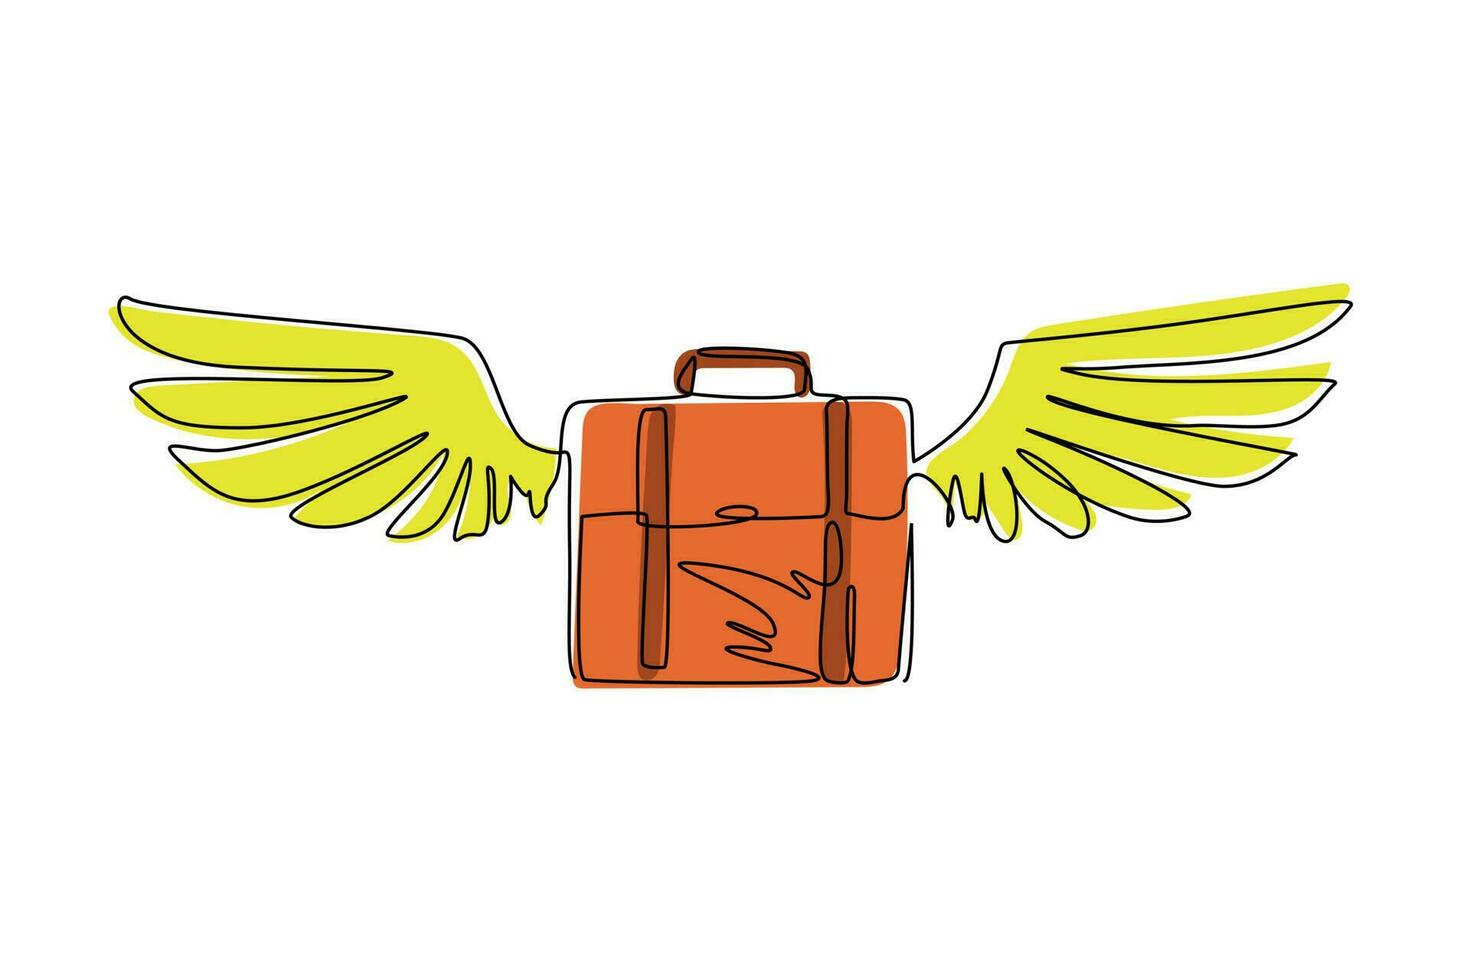 valigetta con disegno a linea continua singola con logo icona piatta ali. valigia da viaggio in volo isolata. simbolo di turismo, bagagli e viaggio. illustrazione vettoriale di disegno grafico dinamico di una linea